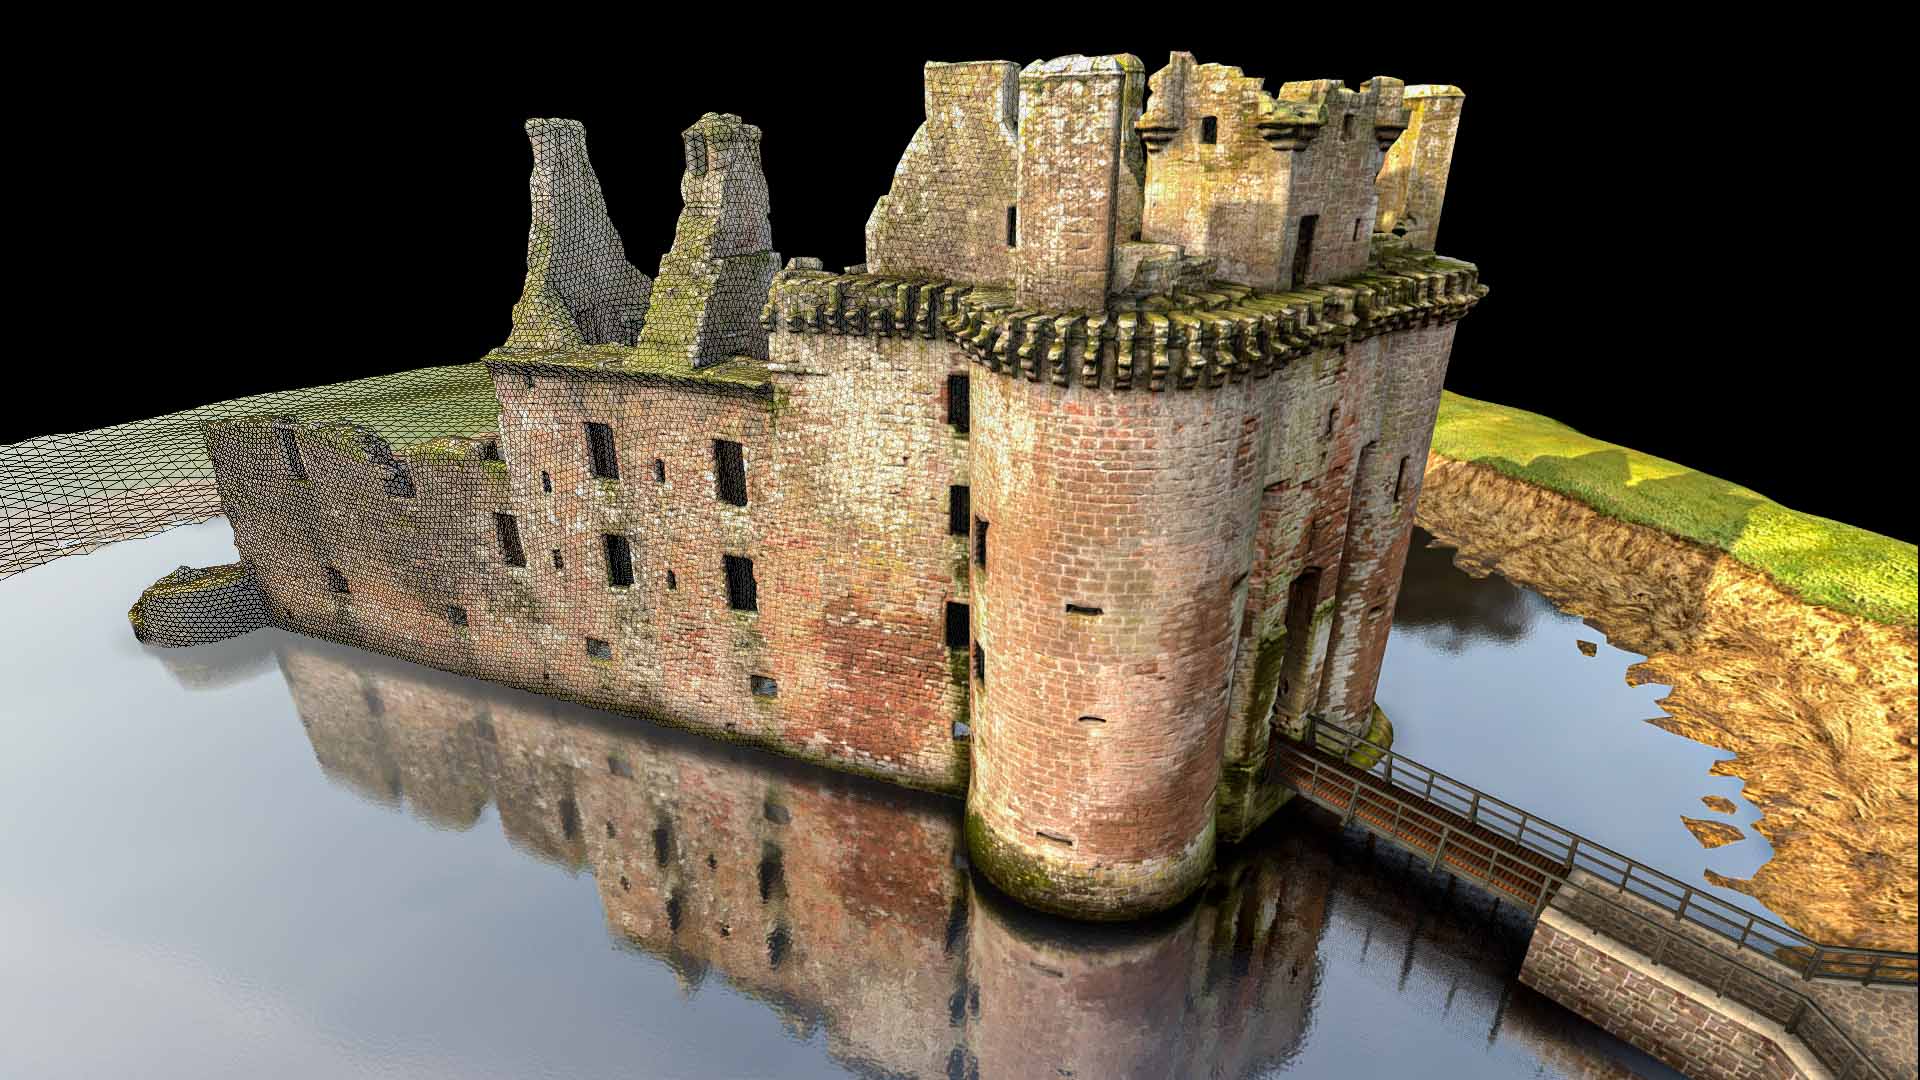 A 3D scan of Caerlaverock Castle